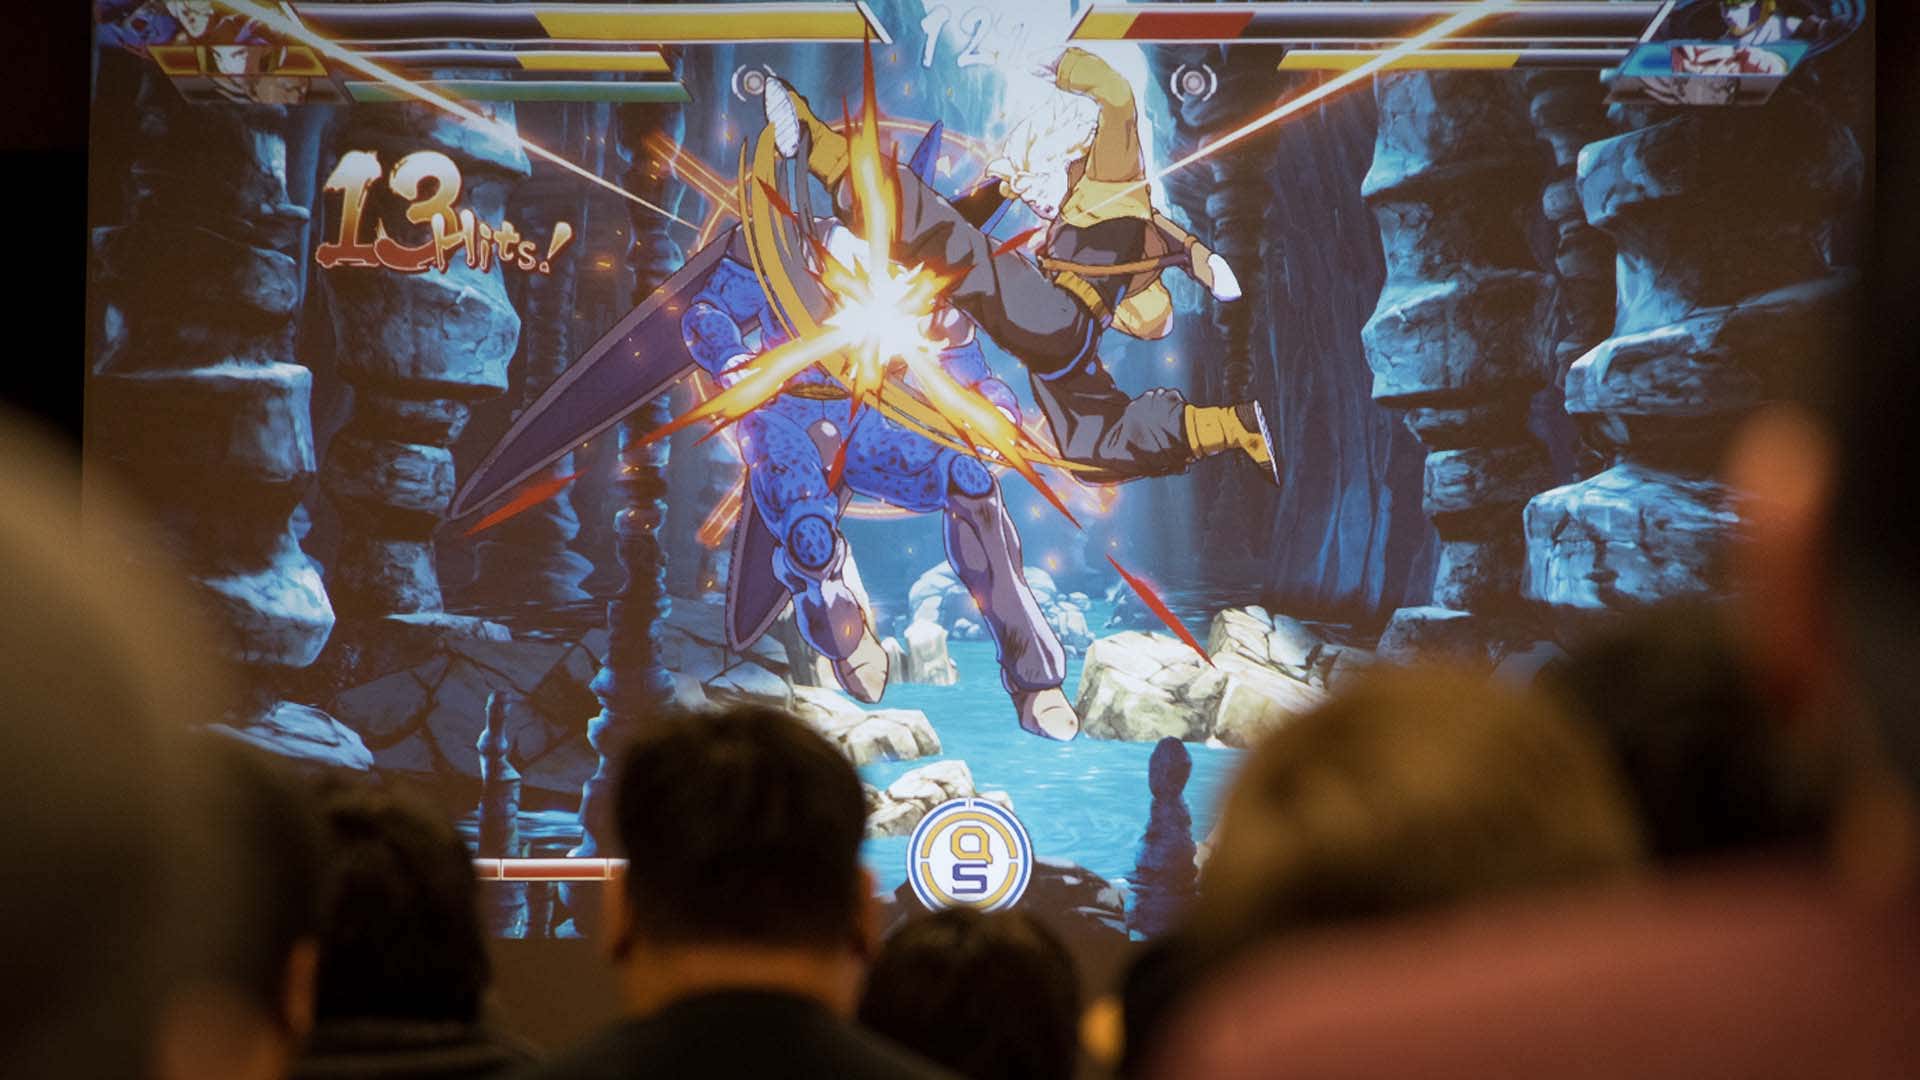 Ein Foto zeigt Menschen, die einen großen Bildschirm mit einem Kampfspiel darauf sehen. 